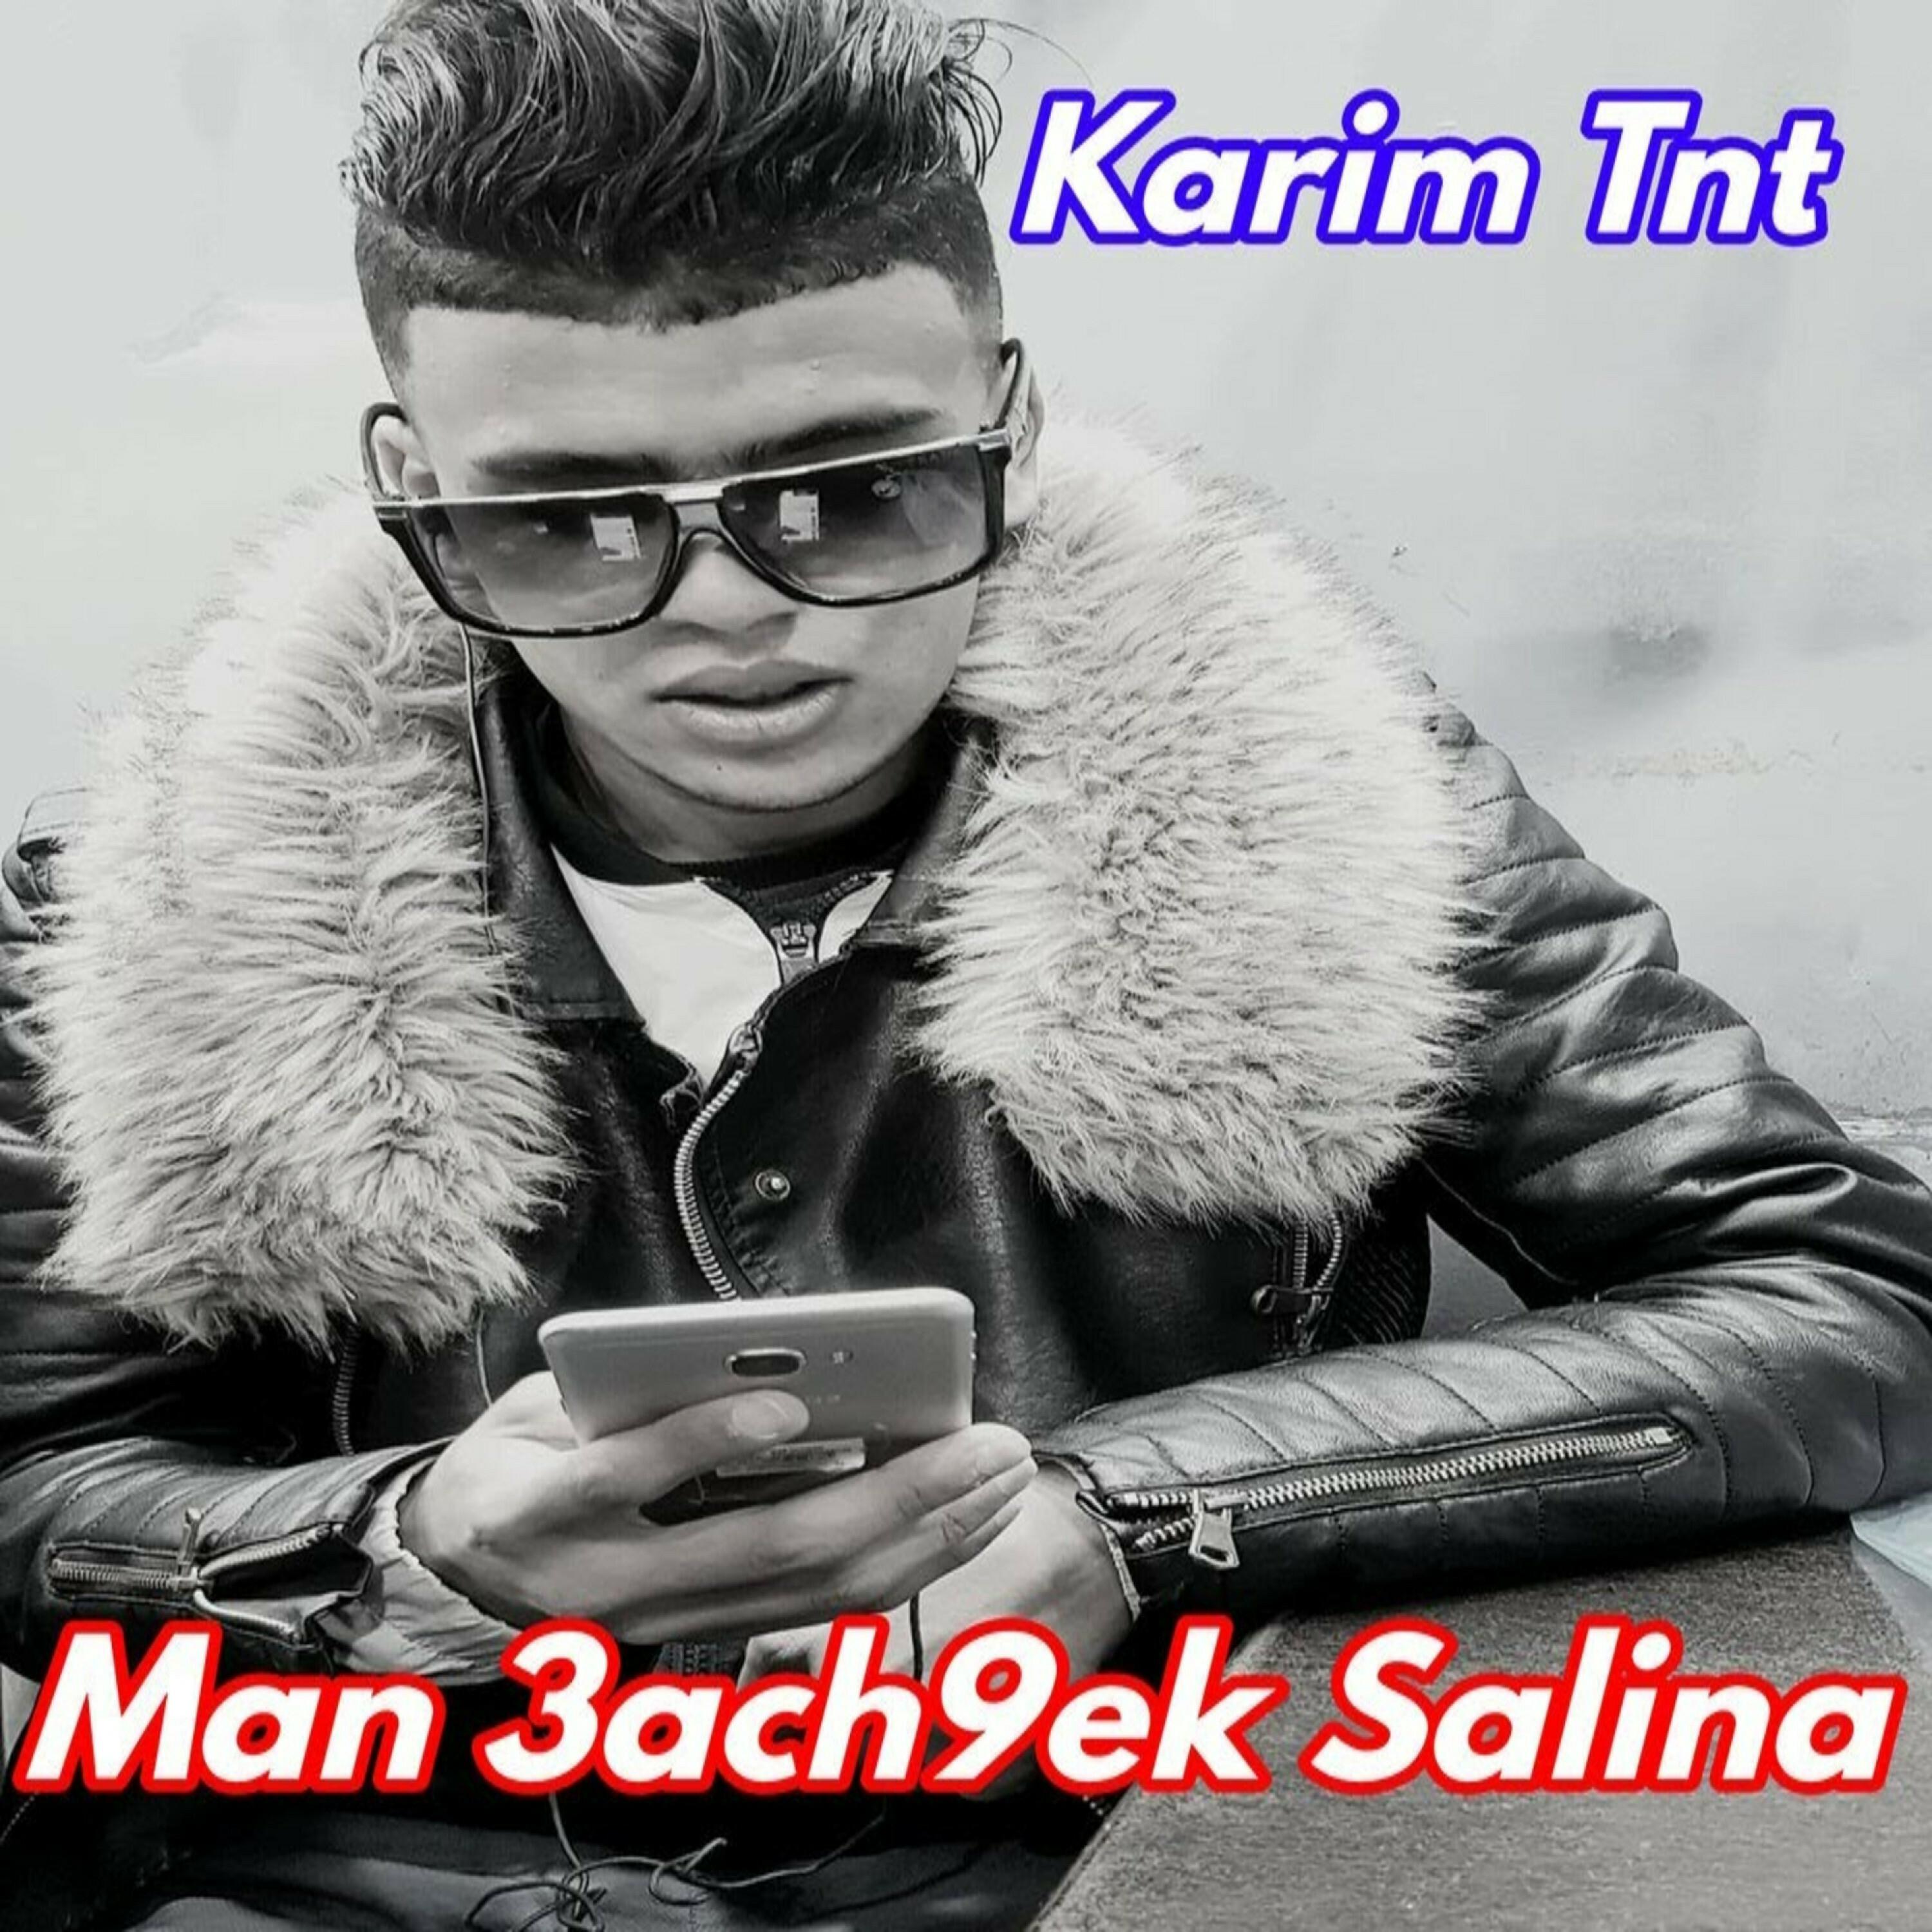 Karim Tnt - Man 3ach9ek Salina